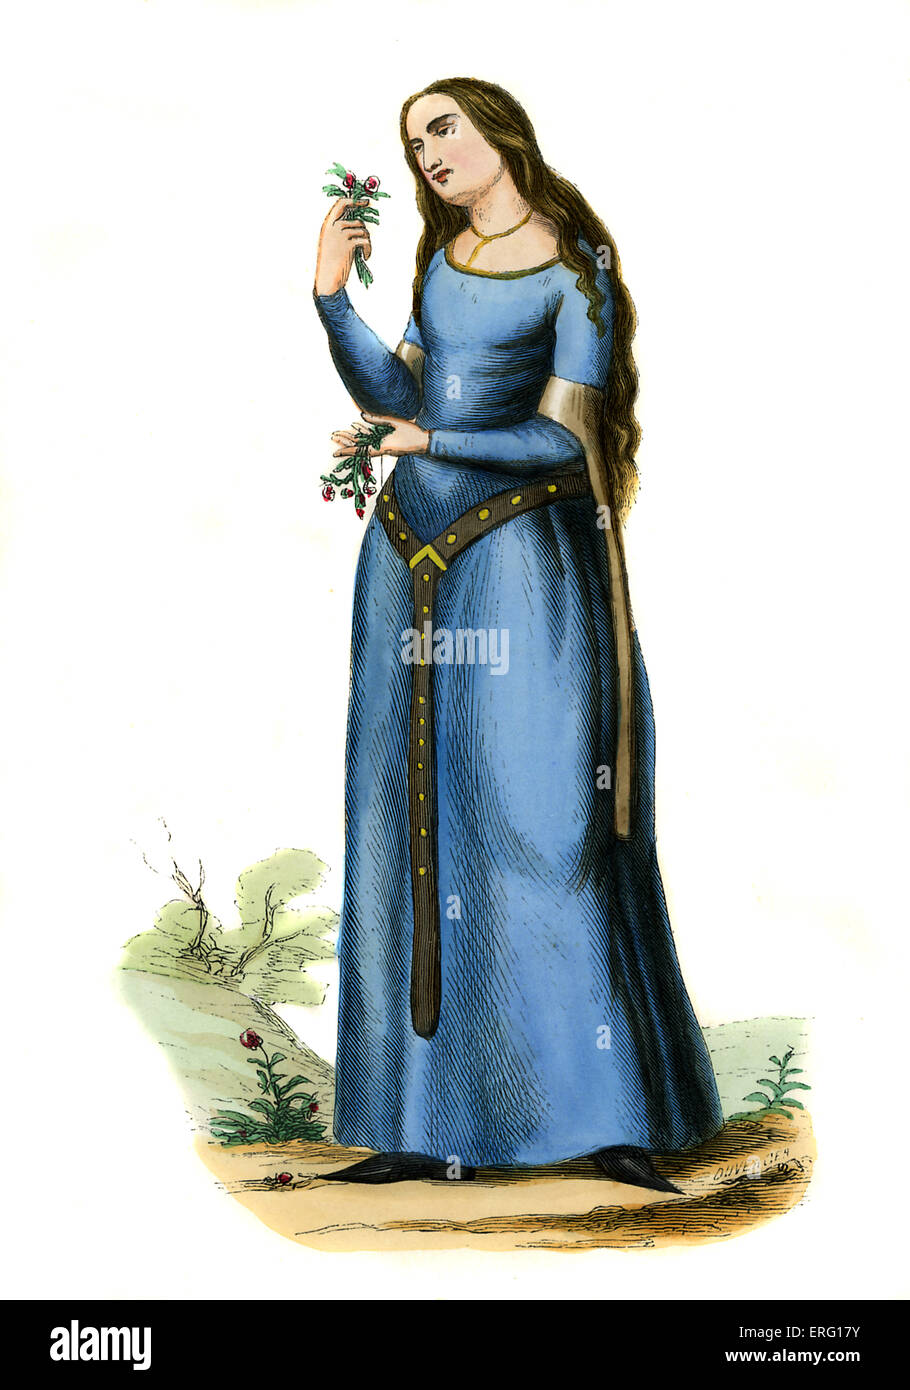 Dame - costume du 13ème siècle, illustré portant une robe bleue avec des manches au coude et un pendentif ceinture. b. c. 1847, peinte à la main copie d'un 13e siècle Le Roman de la Rose, manuscrit. Banque D'Images